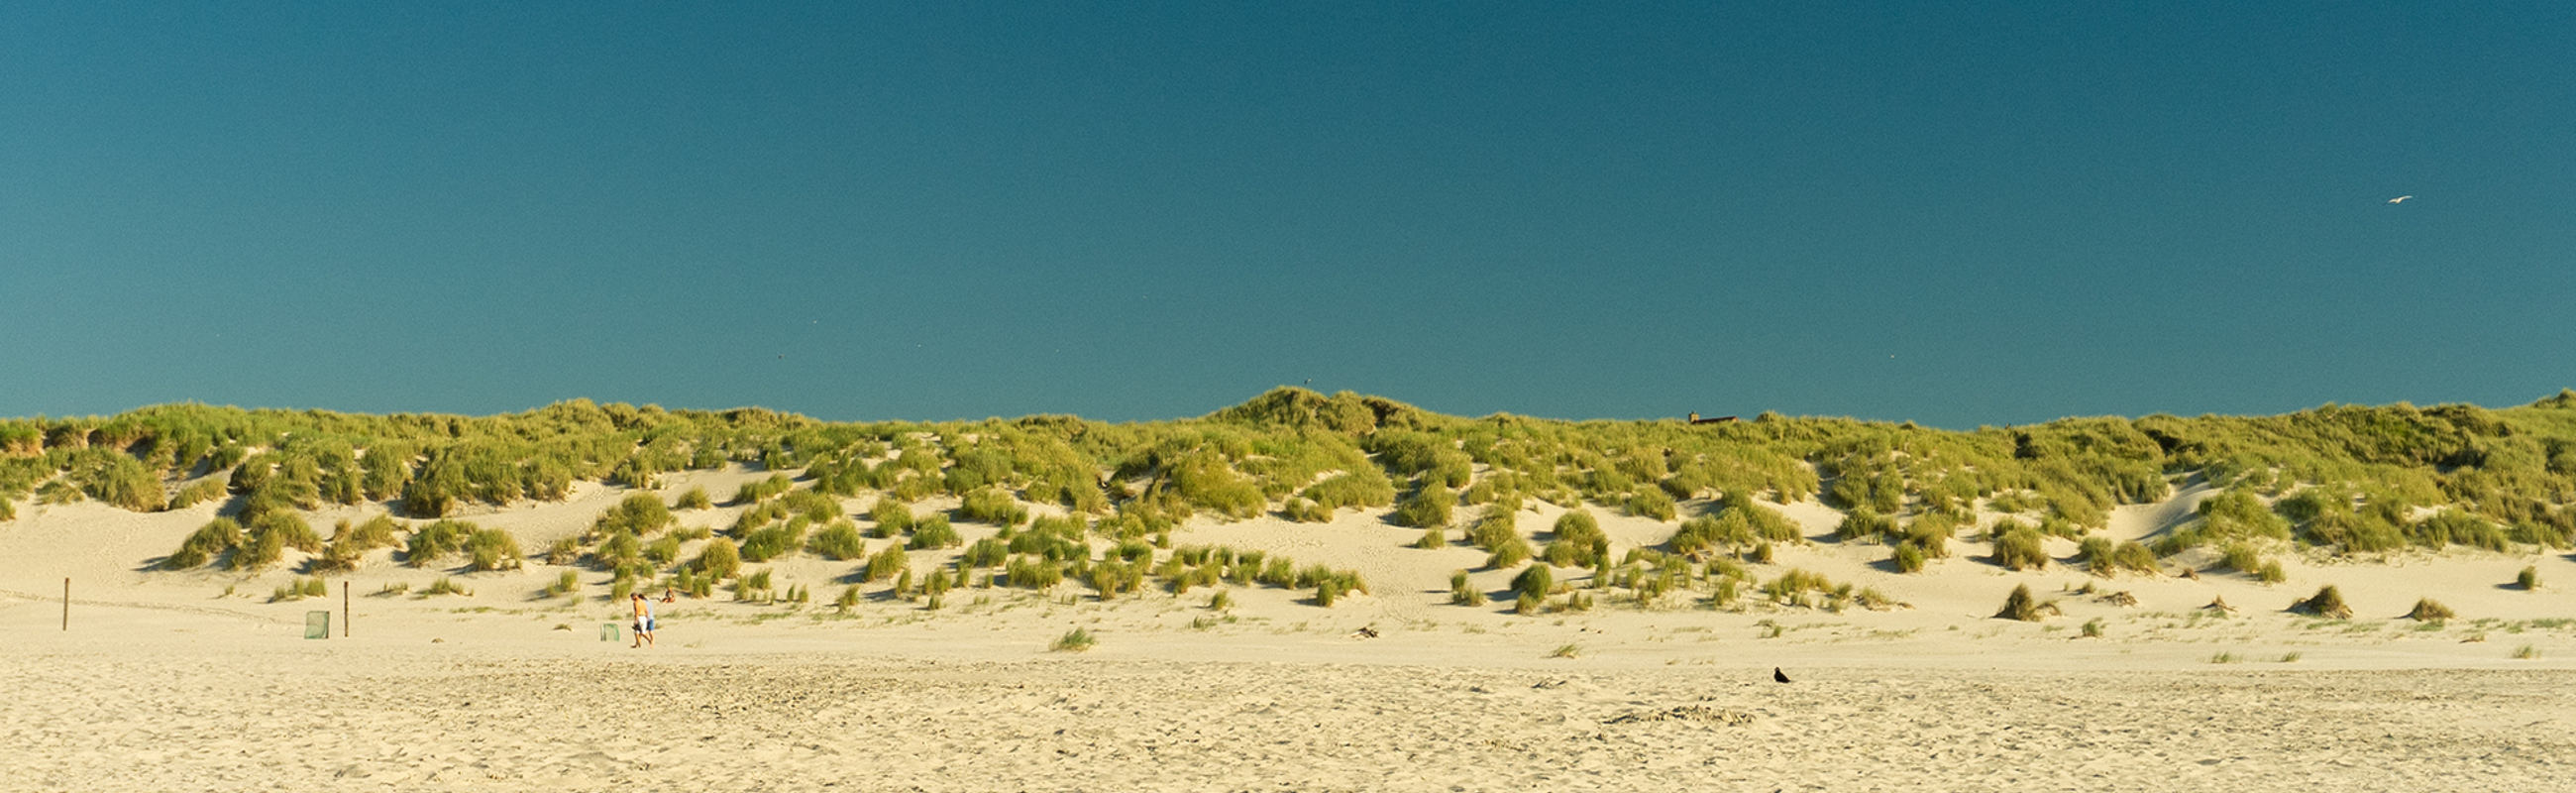 duinen strand zon callantsoog